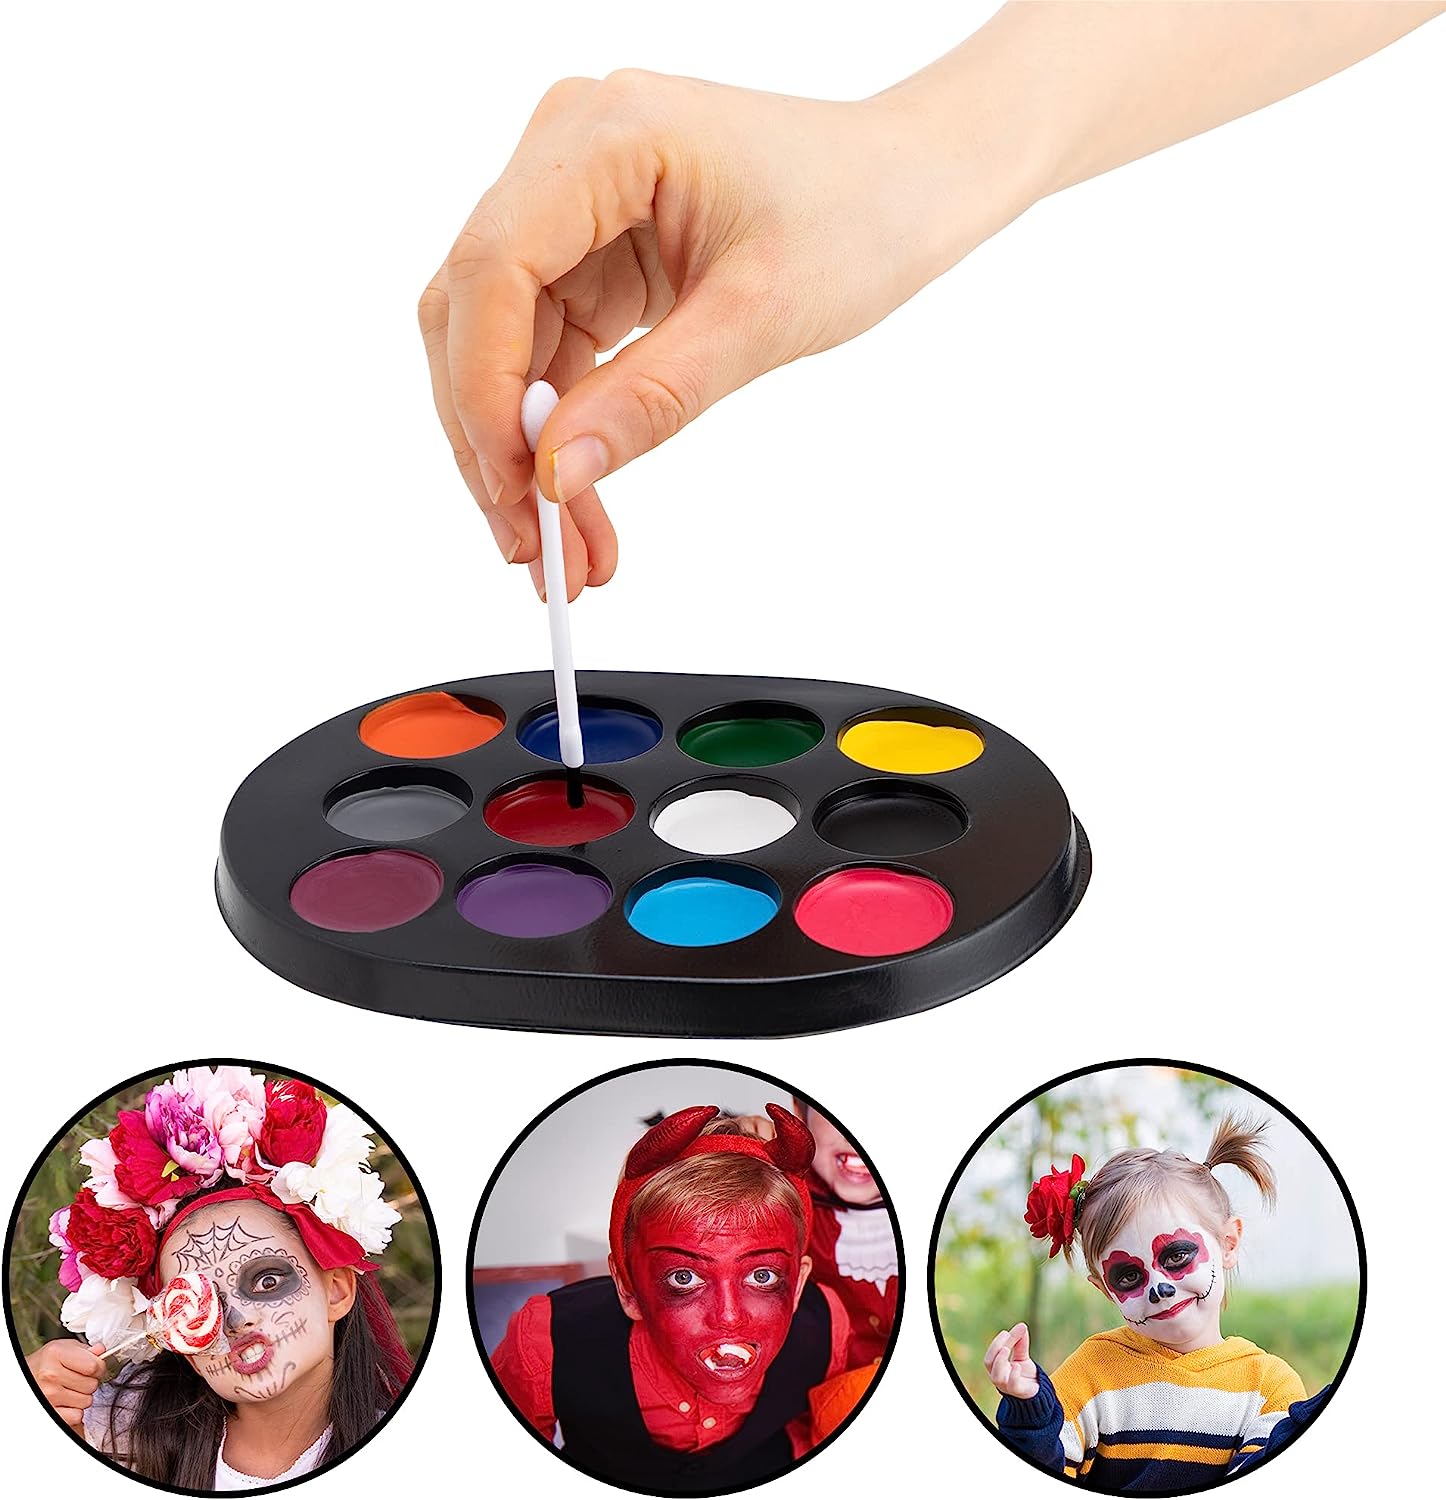 20 Pcs Halloween Family Makeup Kit- SPOOKTACULAR